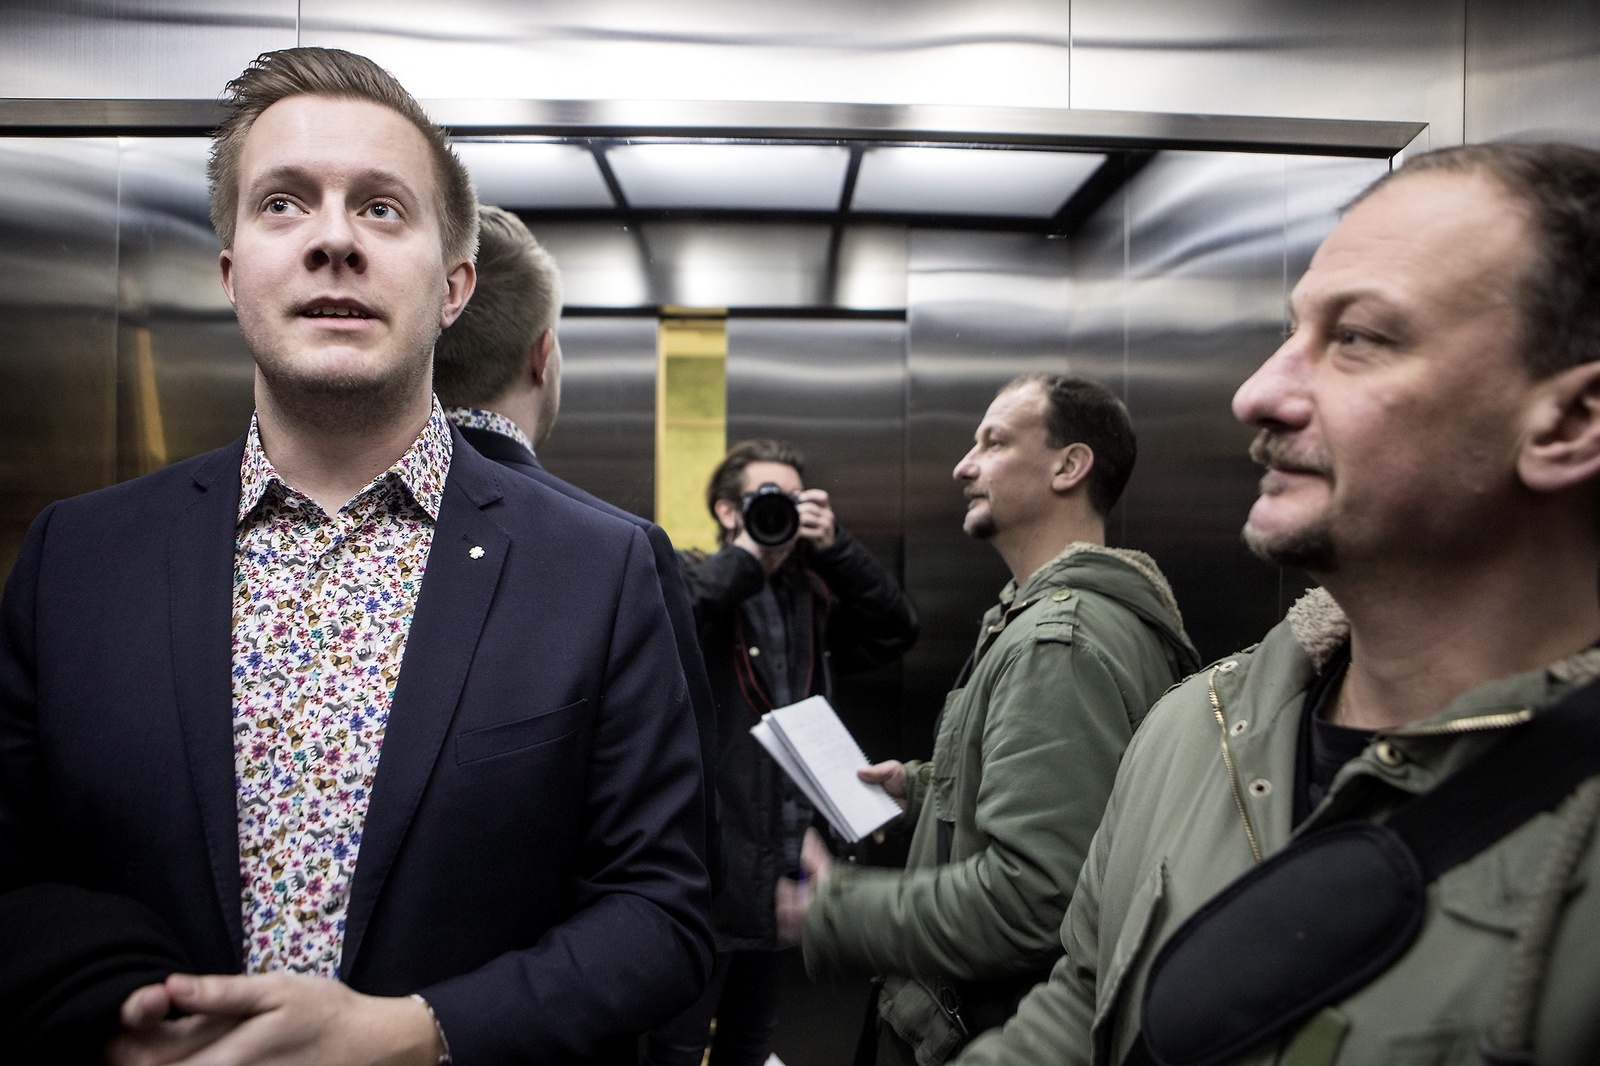 Fotograf Jörgen Johansson och reporter Andreas Örwall Lovén tog rygg på Niklas Larsson (C) under minglet.